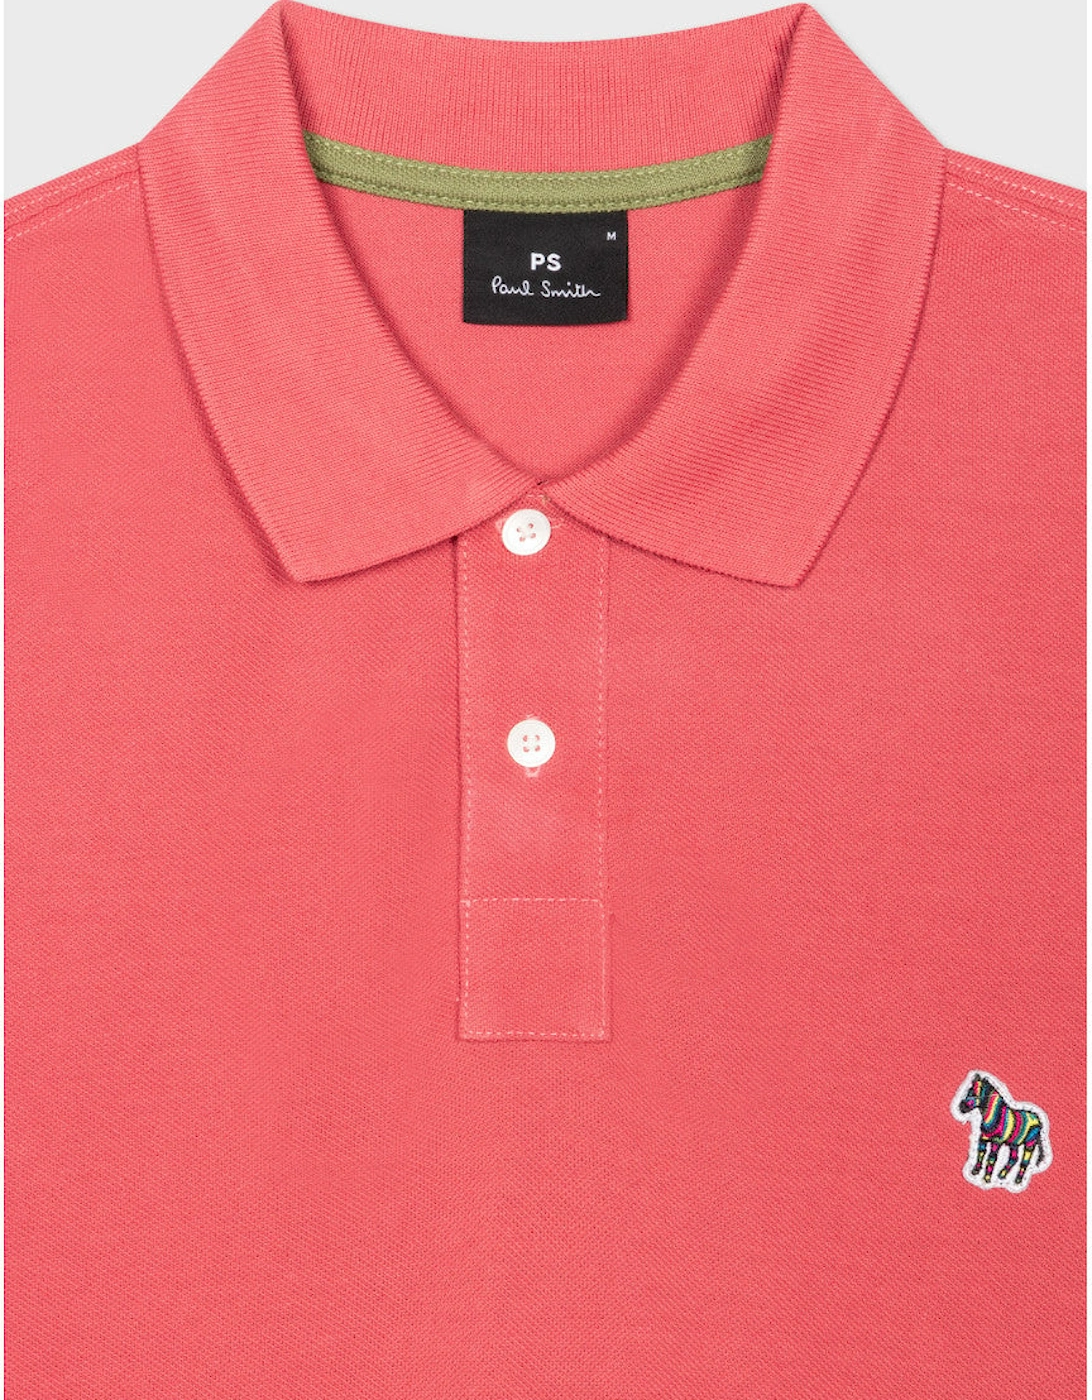 PS Regular Fit SS Zebra Polo Shirt 23B Pink